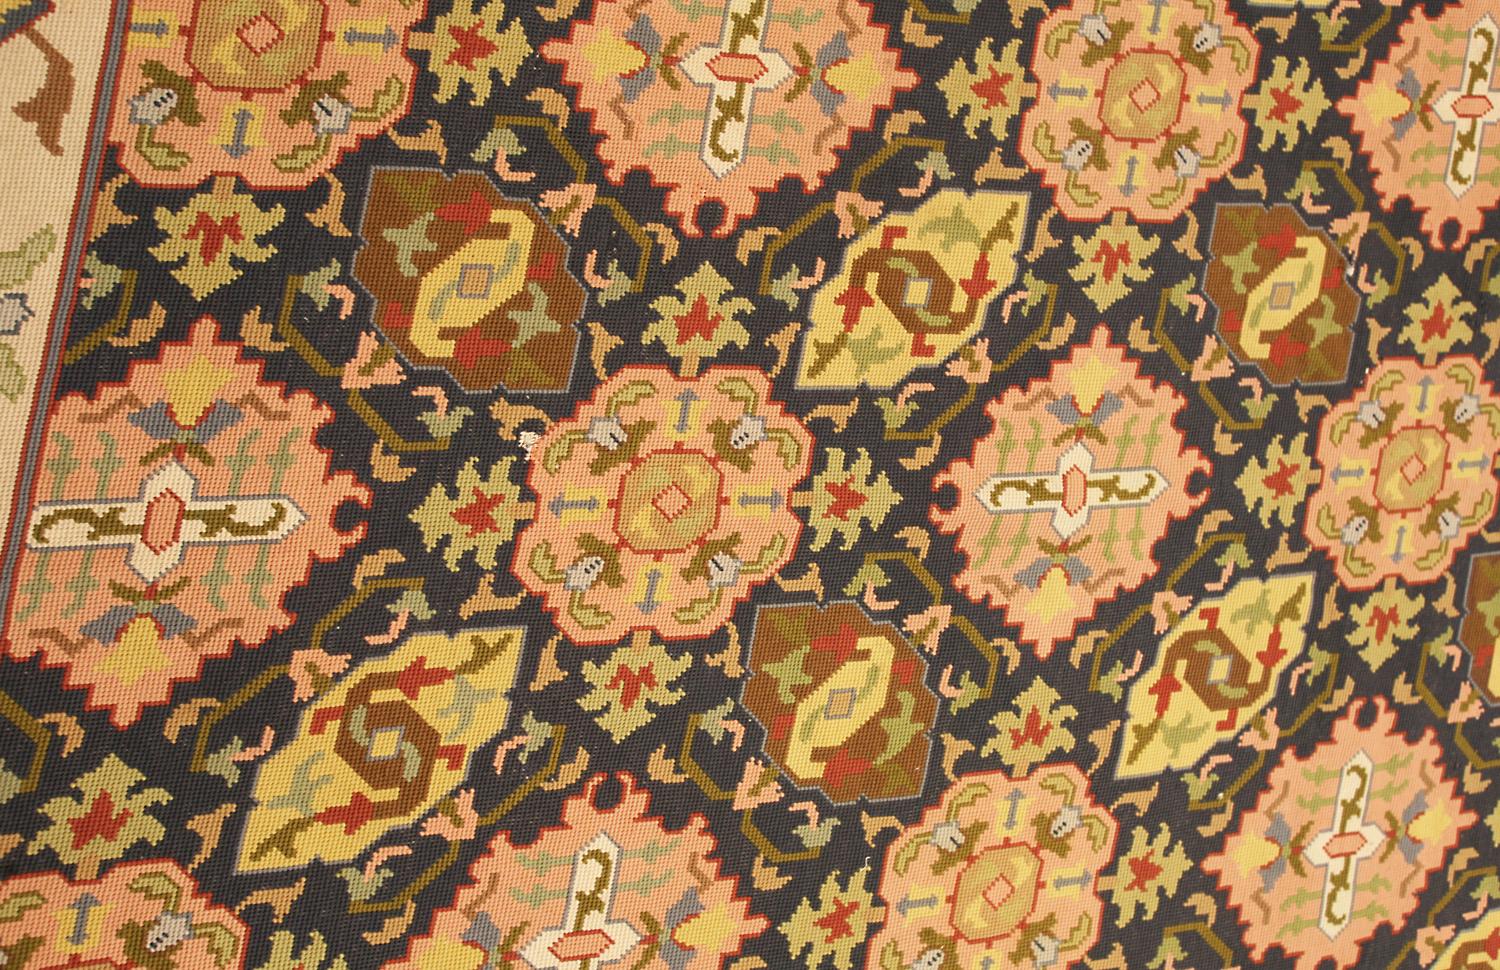 Dies ist eine antike englische Nadelspitze Teppich gewebt während des Endes des 19. Jahrhunderts um 1900 und misst 217 x 122CM in der Größe. Bei diesem Stück handelt es sich um eine traditionelle Allover-Variante des berühmten 